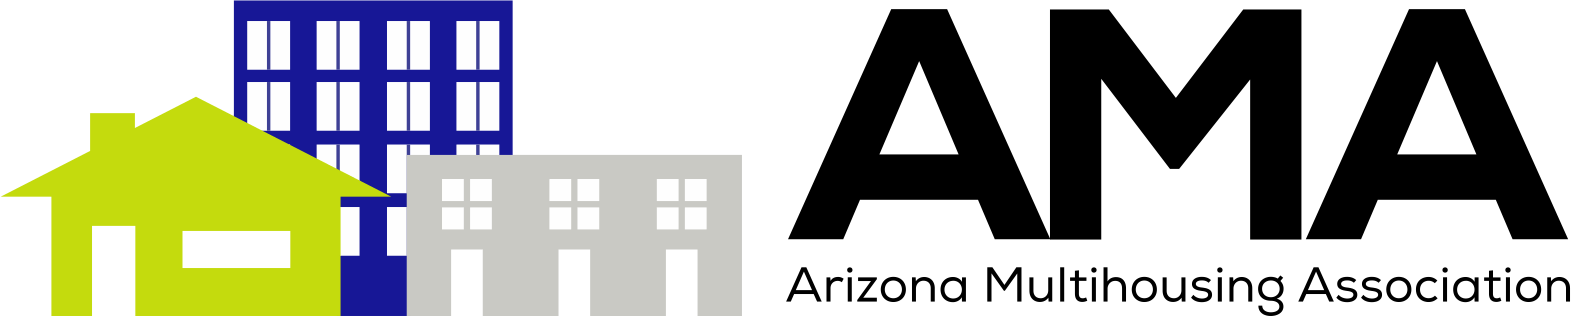 Arizona Multihousing Assoc